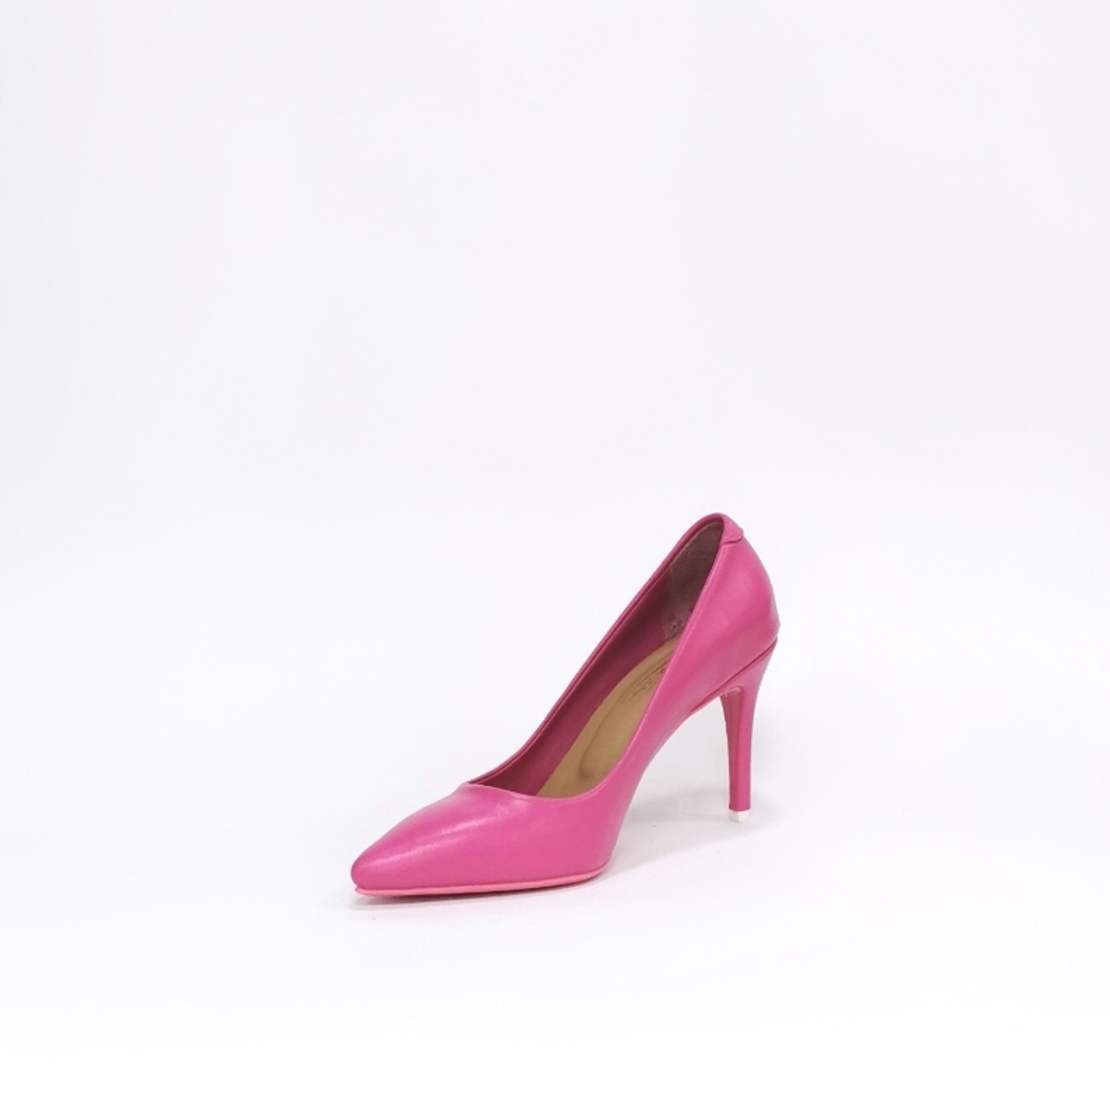 Женские элегантные туфли из натуральной кожи цвета цикламен/78501